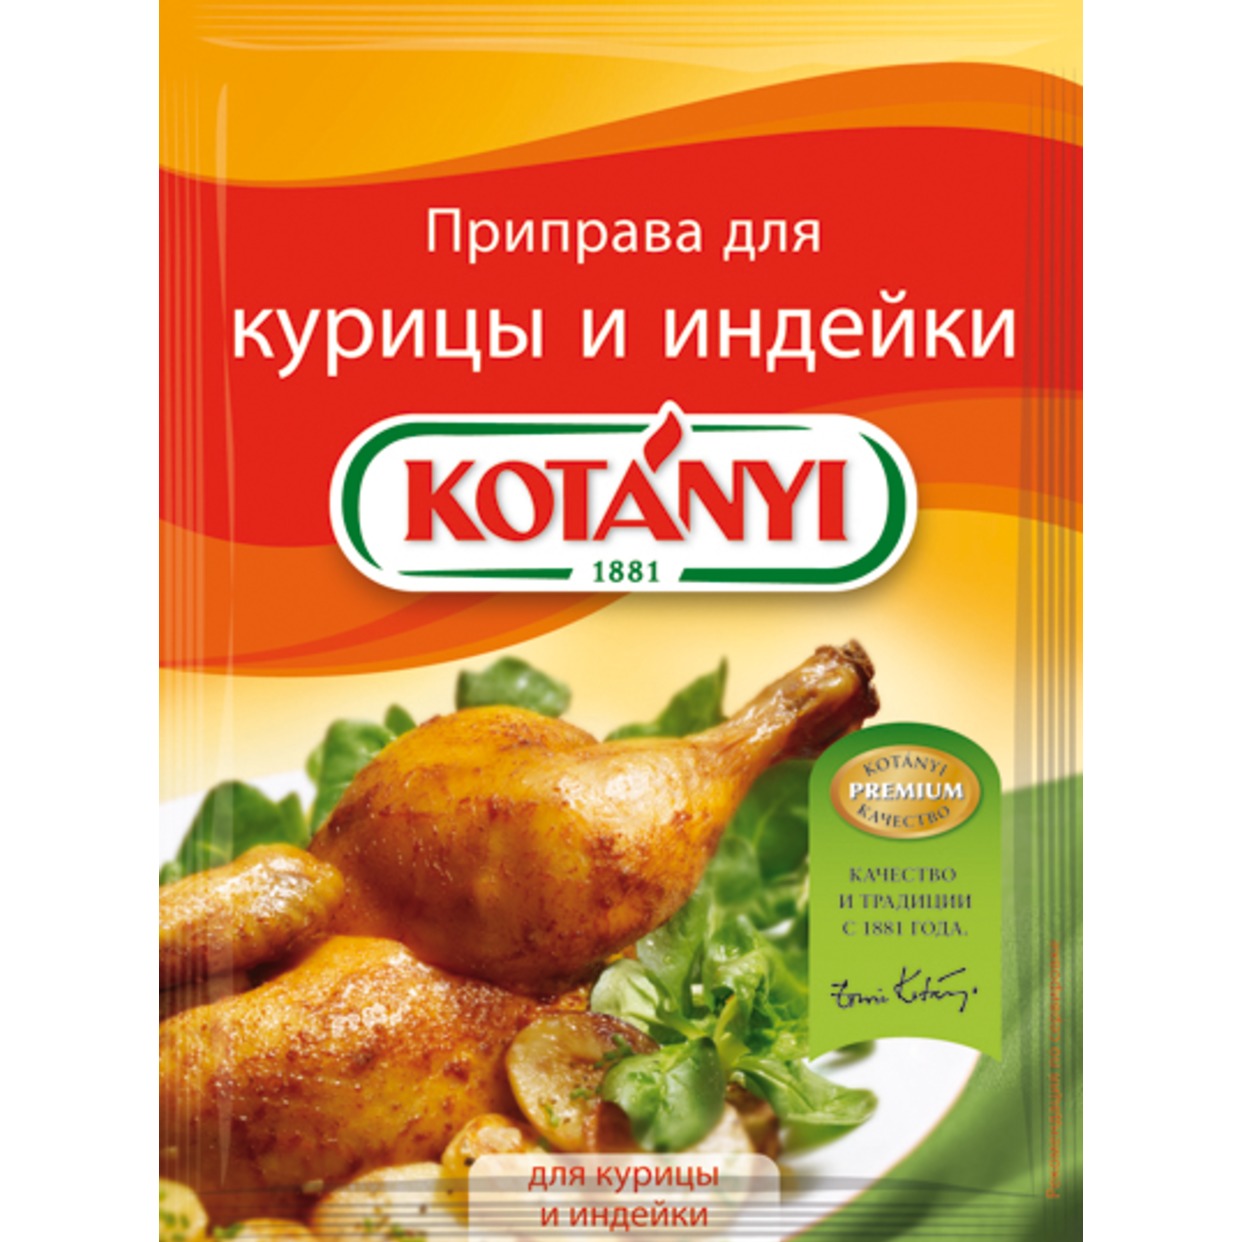 Приправа Kotanyi для курицы и индейки 30 г по акции в Пятерочке